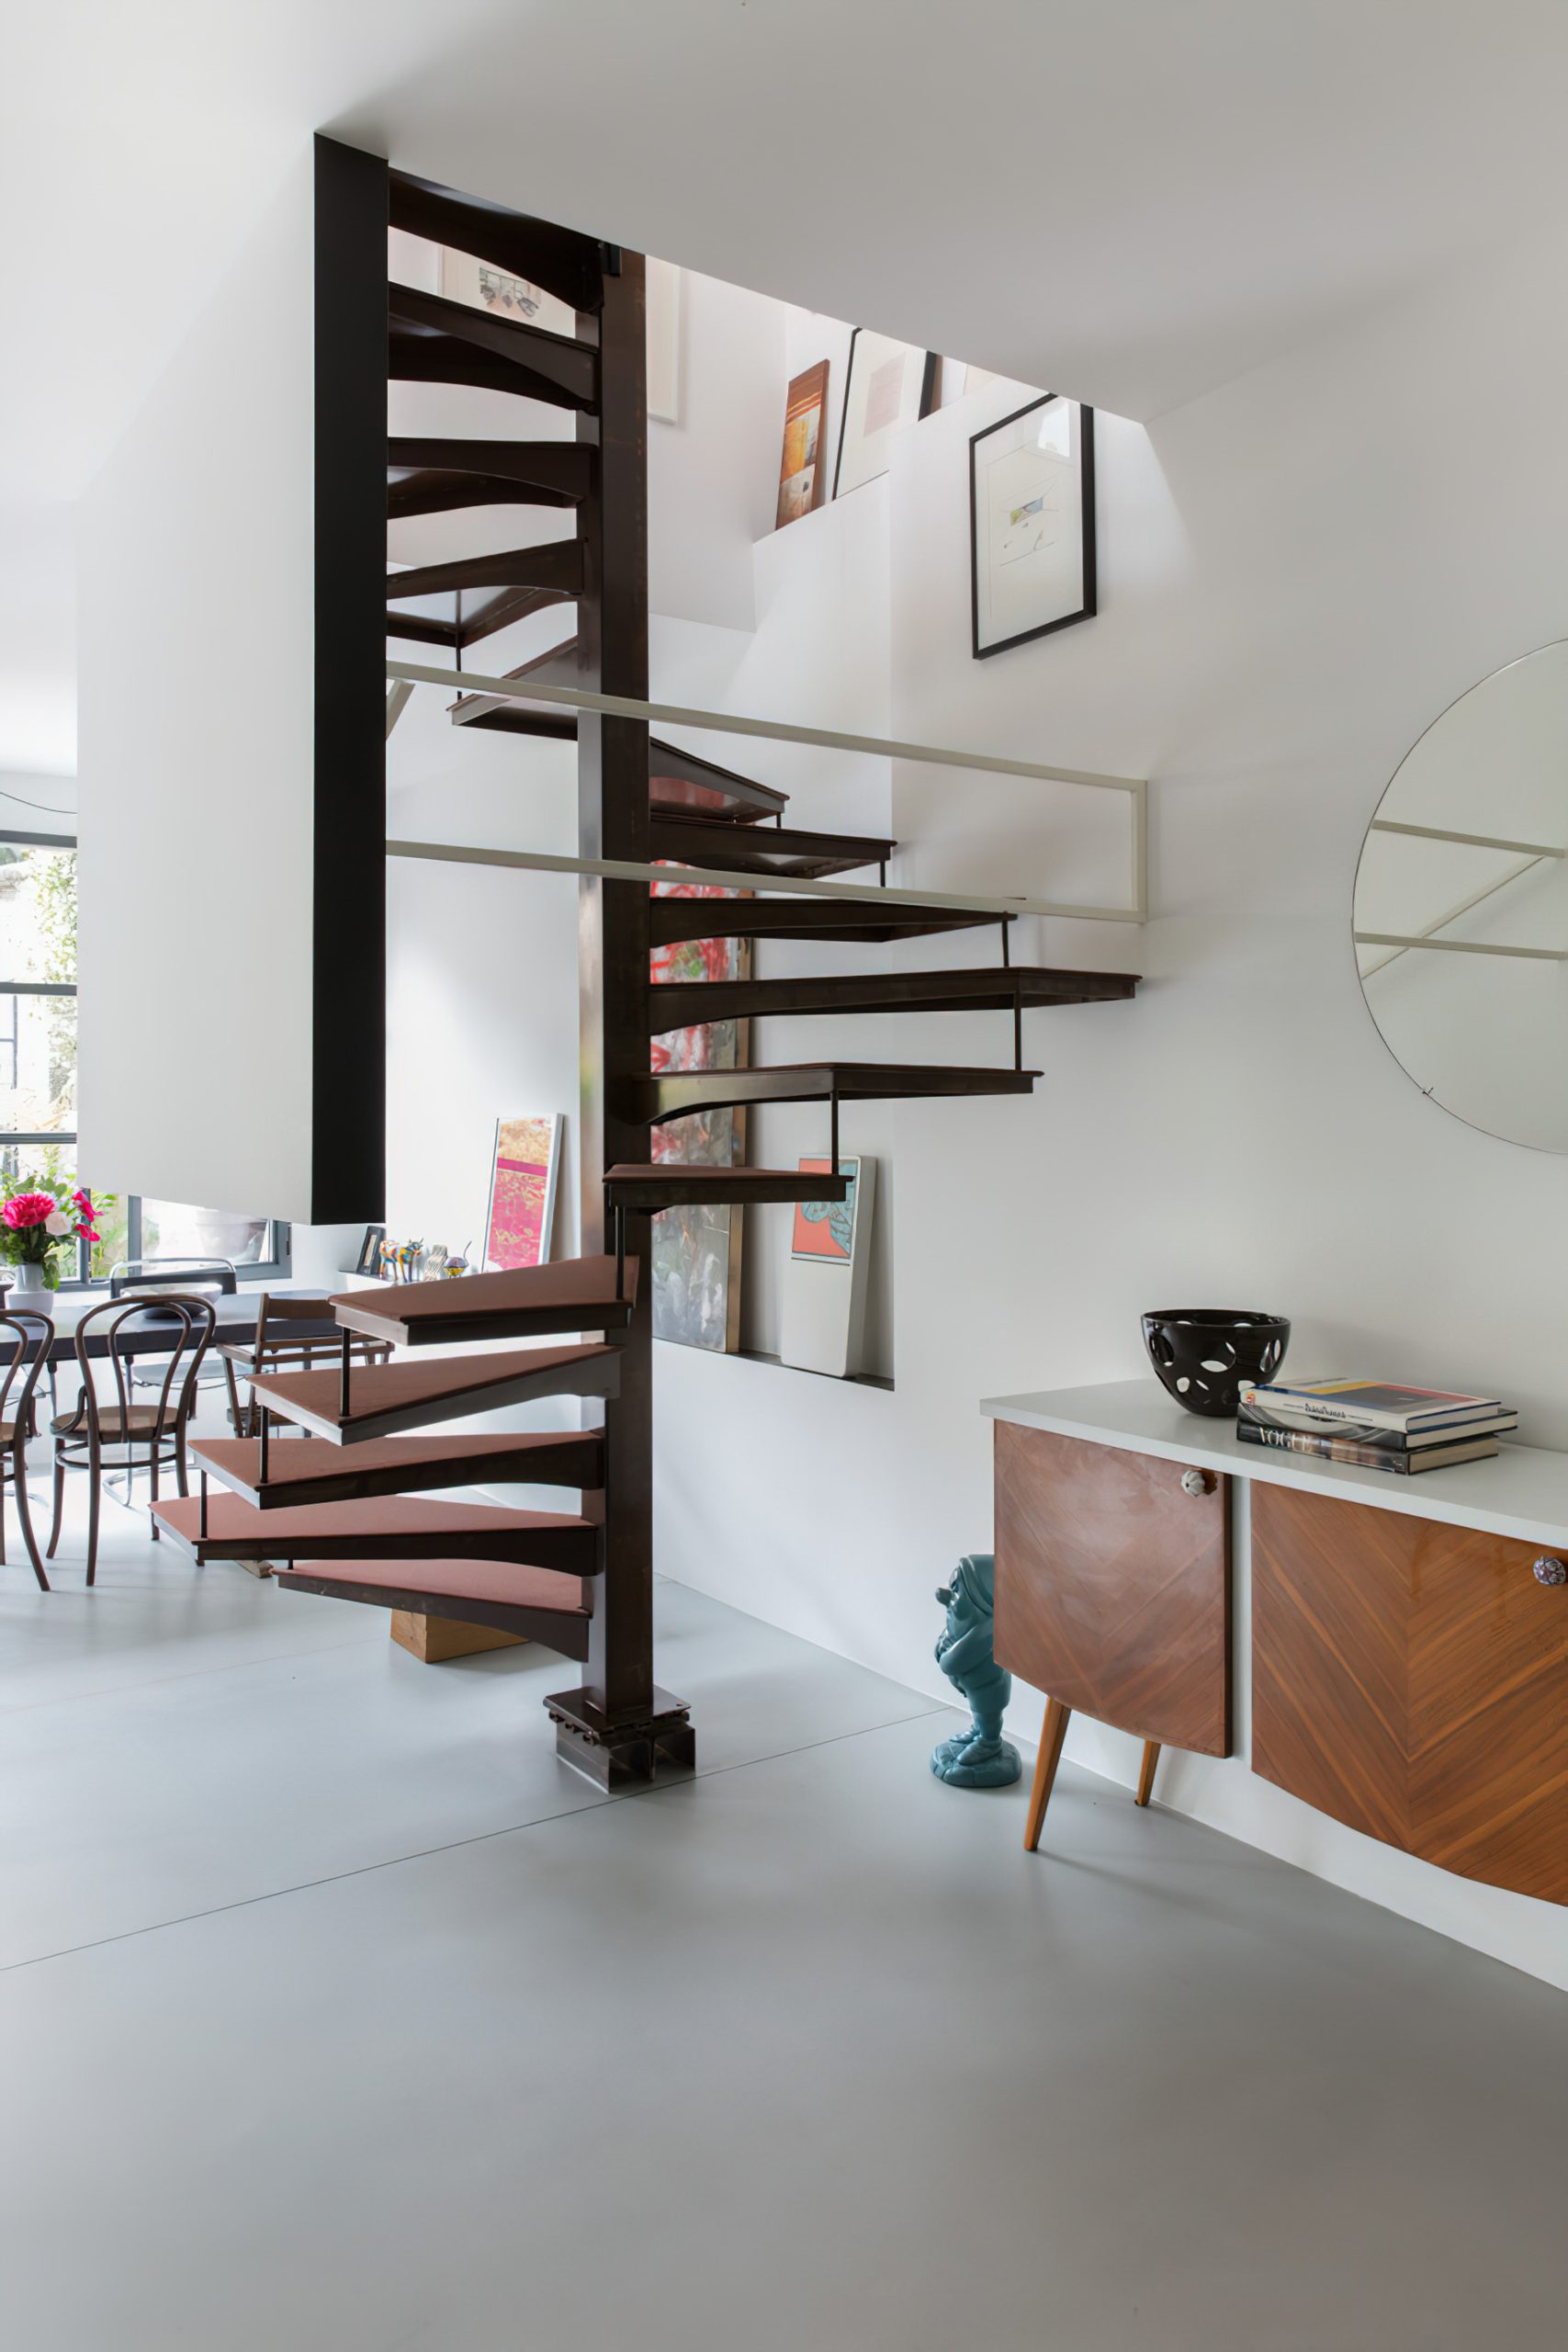 Casa Cialdini Eclectic Interior Design Milan, Italy – Stefania Micotti